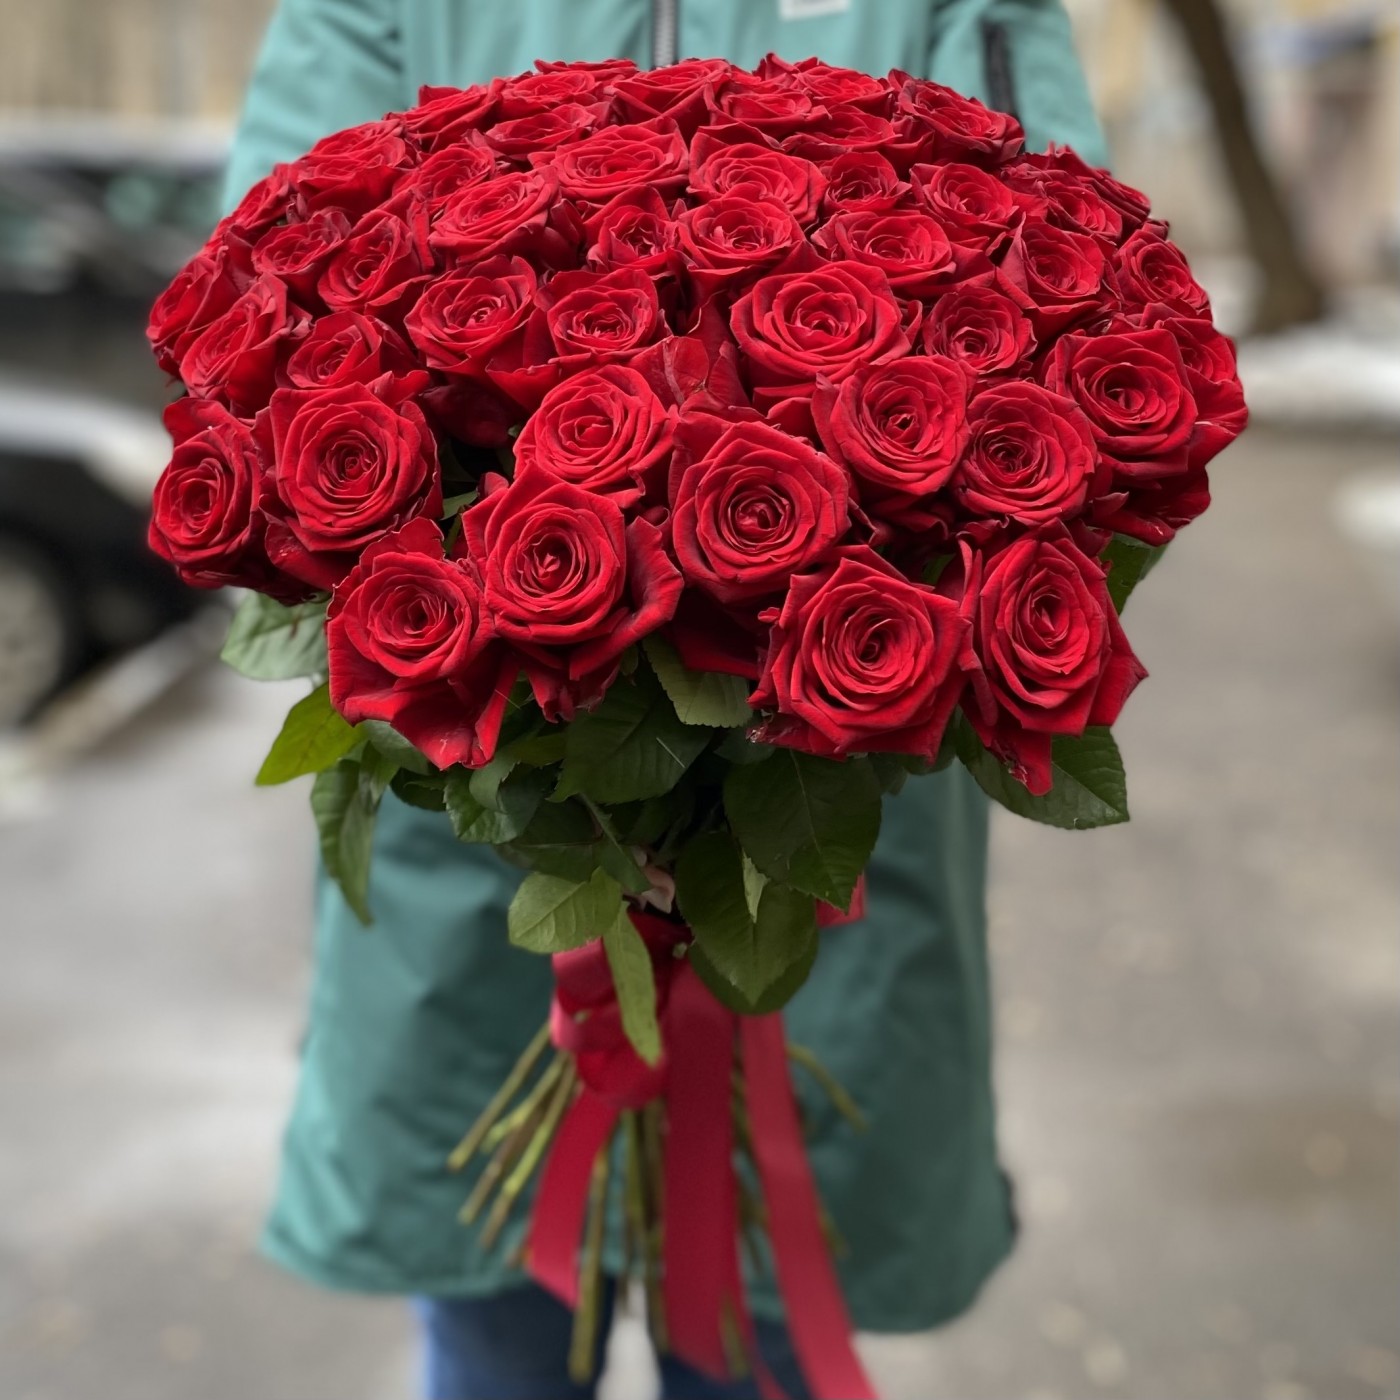 Купить розы с доставкой по москве недорого клубника в коломне